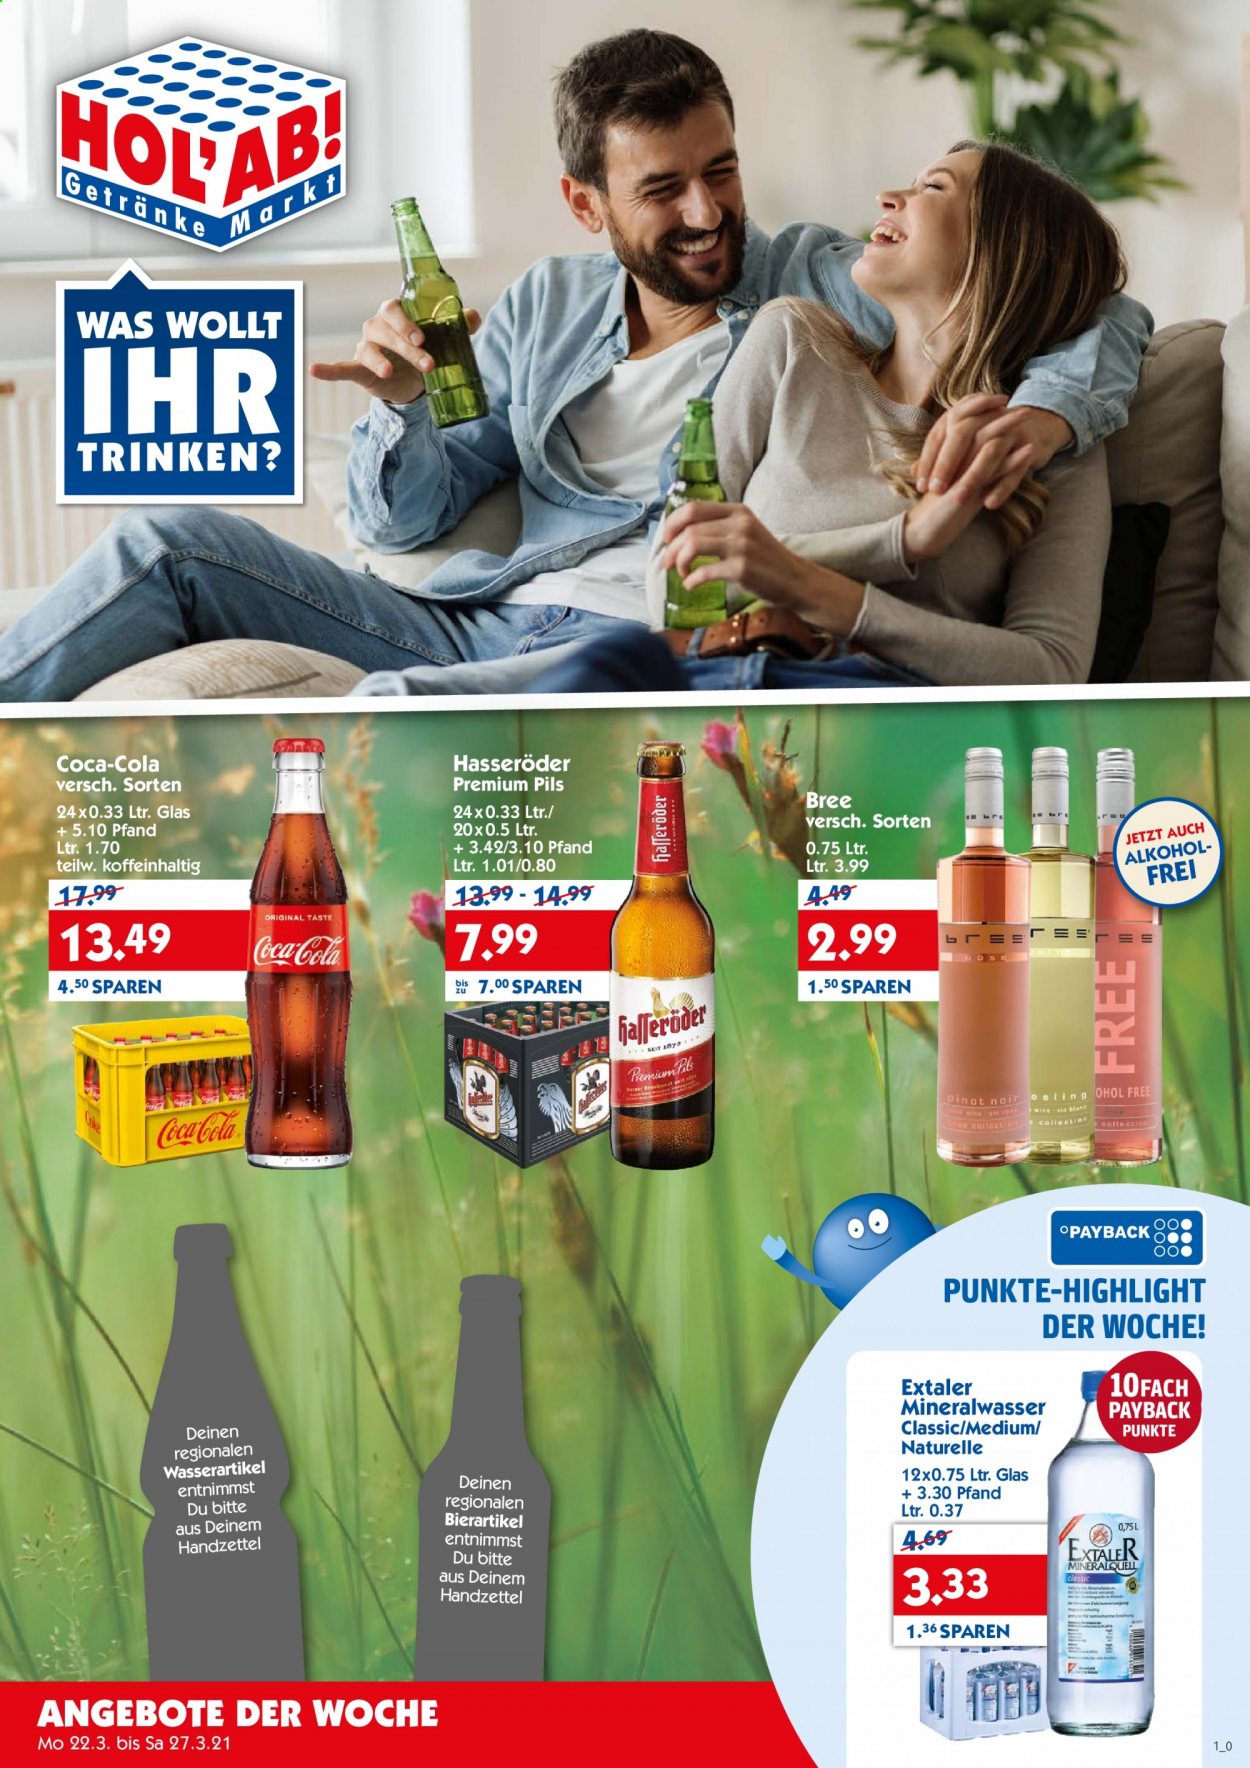 thumbnail - Prospekte Hol'ab! Getränkemarkt - 22.03.2021 - 27.03.2021 - Produkte in Aktion - Hasseröder, Mineralwasser, Coca-Cola. Seite 1.